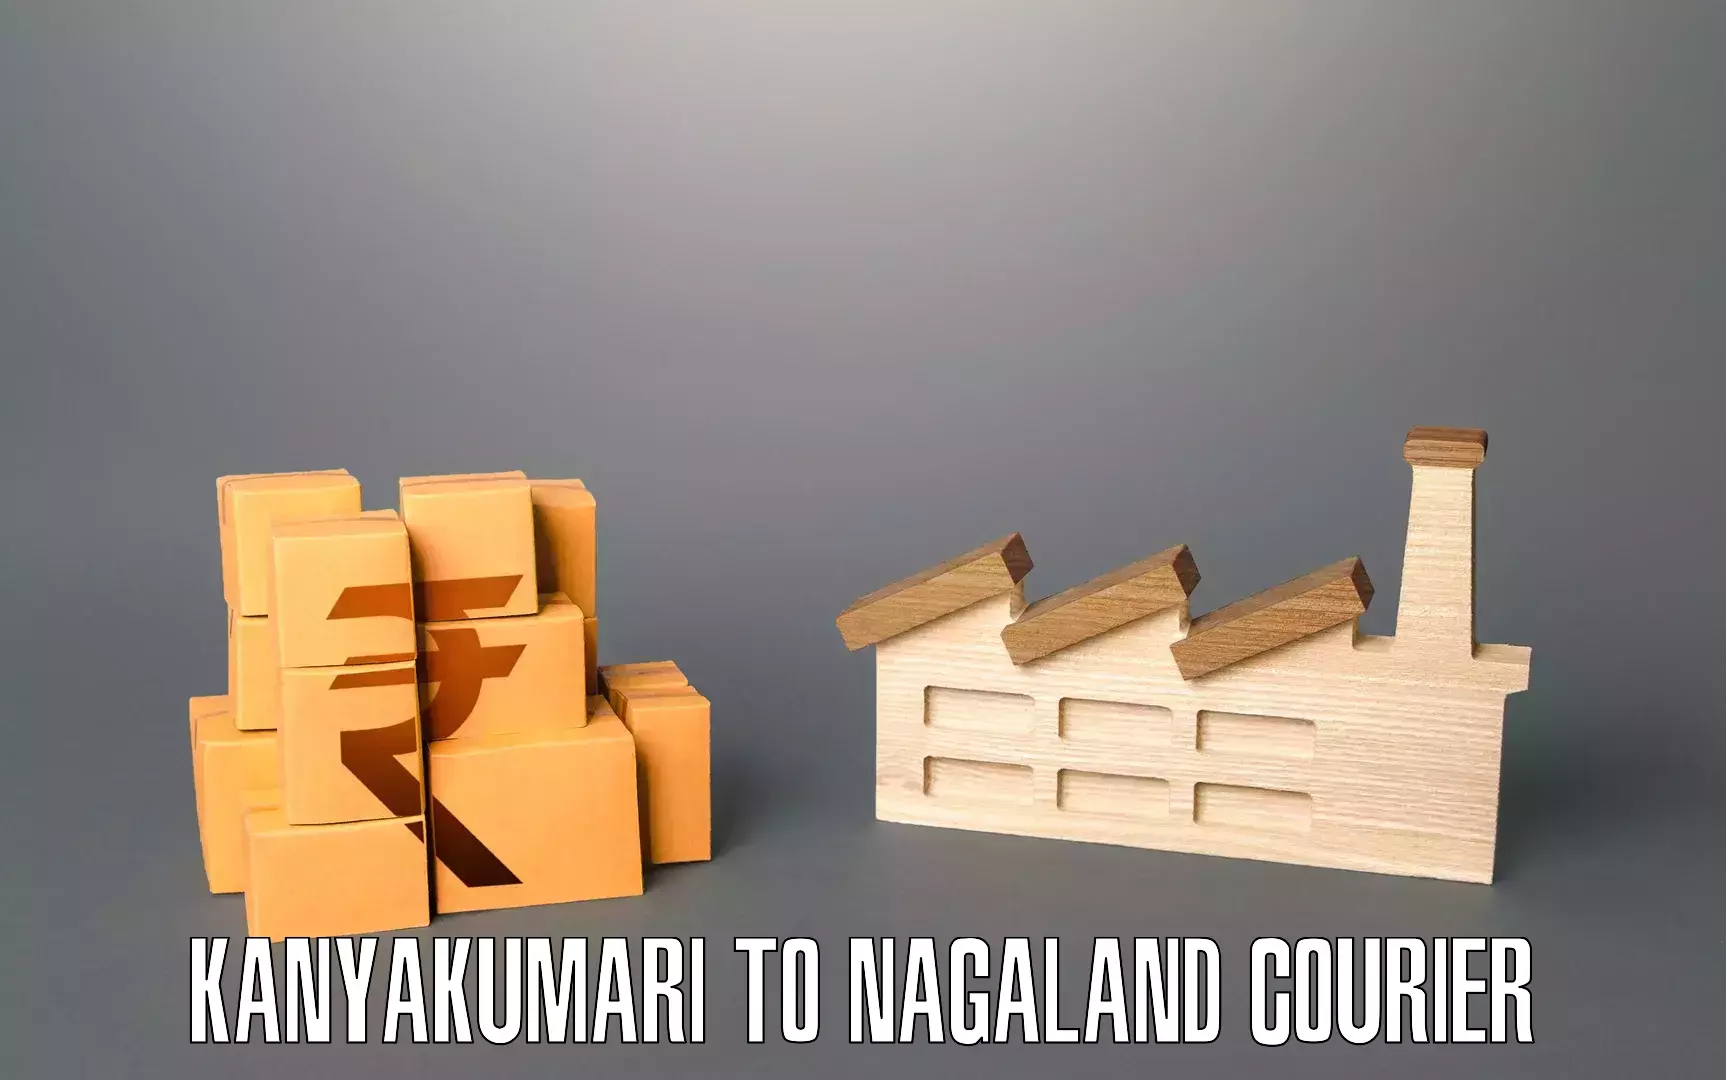 Budget-friendly movers Kanyakumari to Dimapur